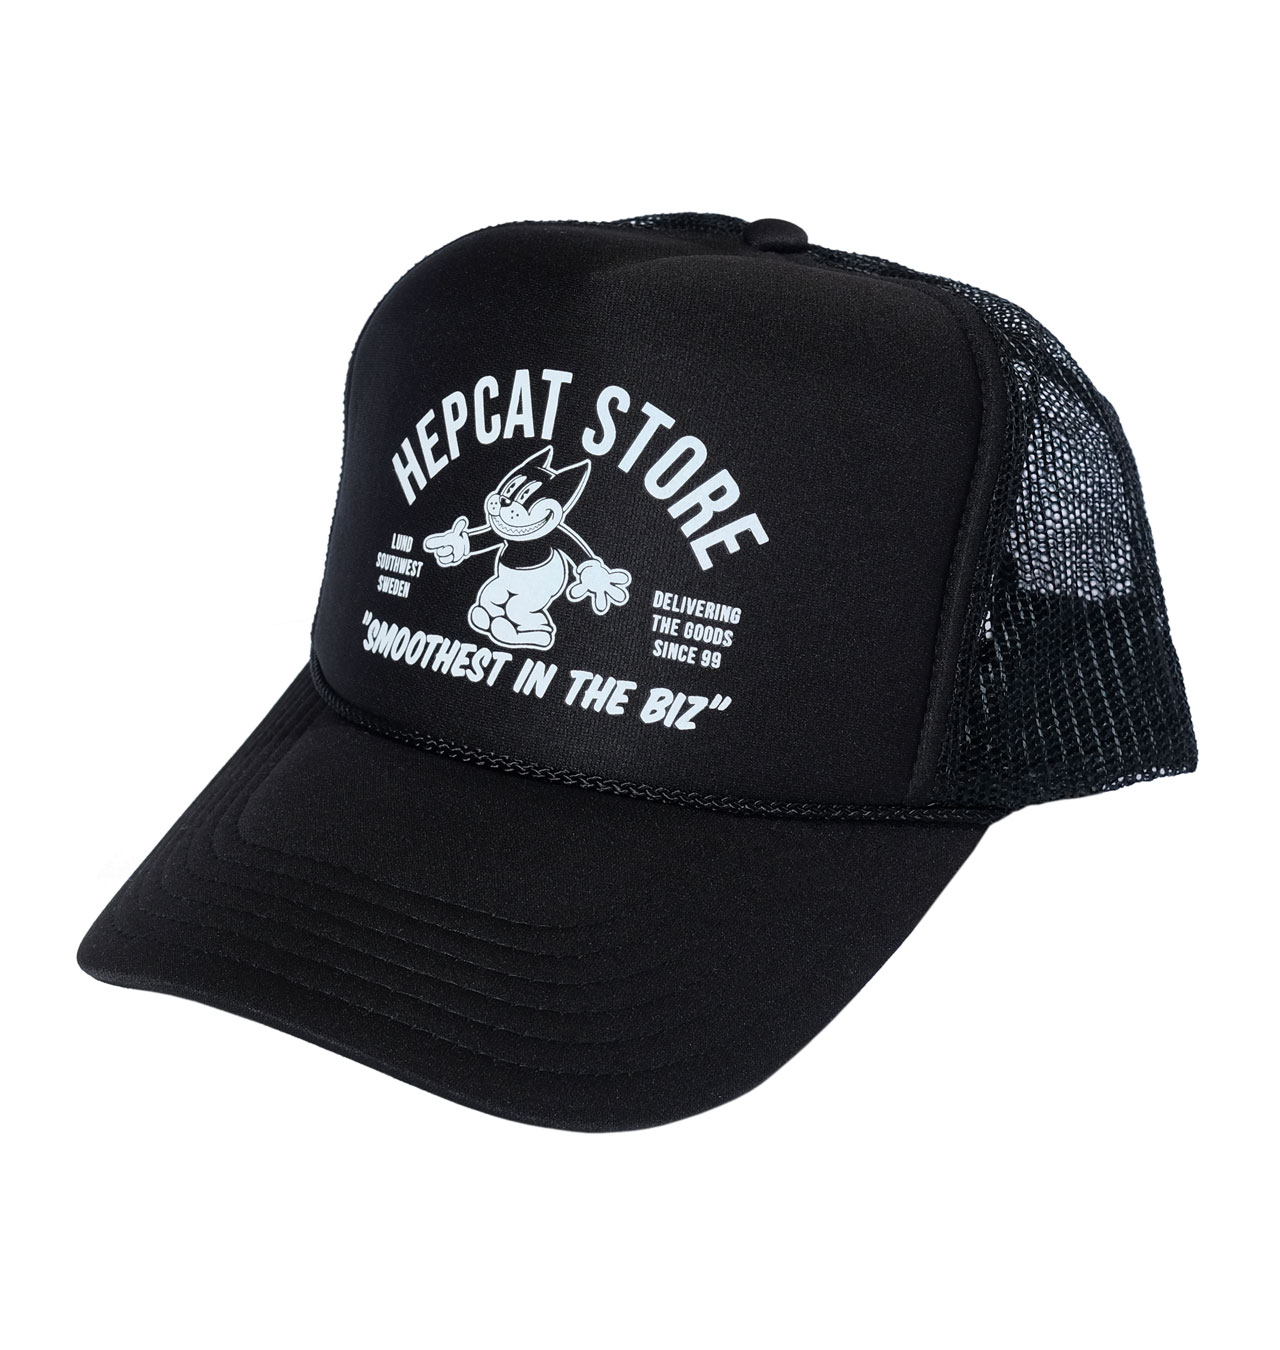 HepCat - Smoothest In The Bizz Trucker Cap - Black